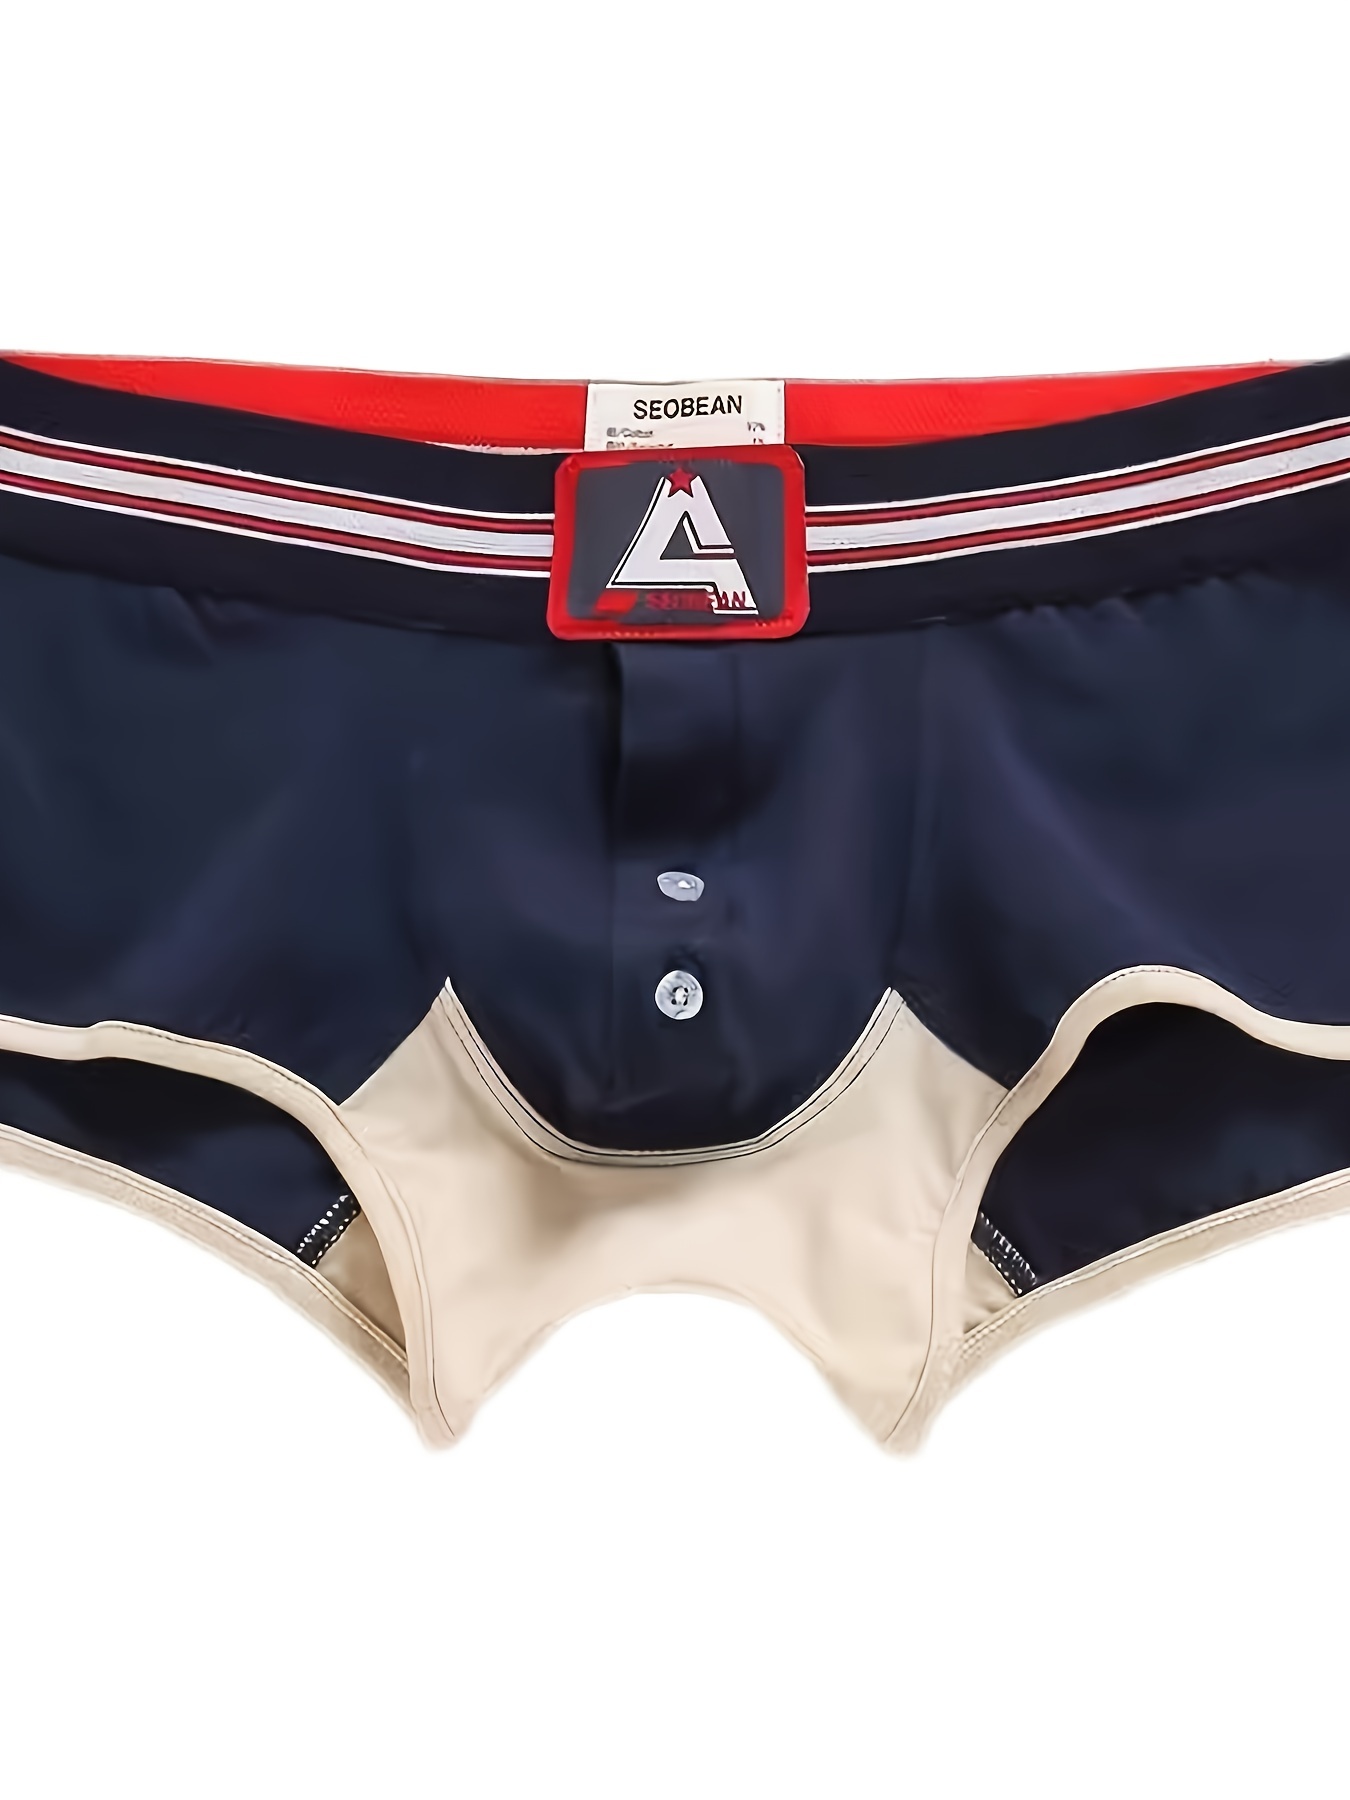 Open Front Men's Underwear UK: Sexy Boxers Briefs & Thongs